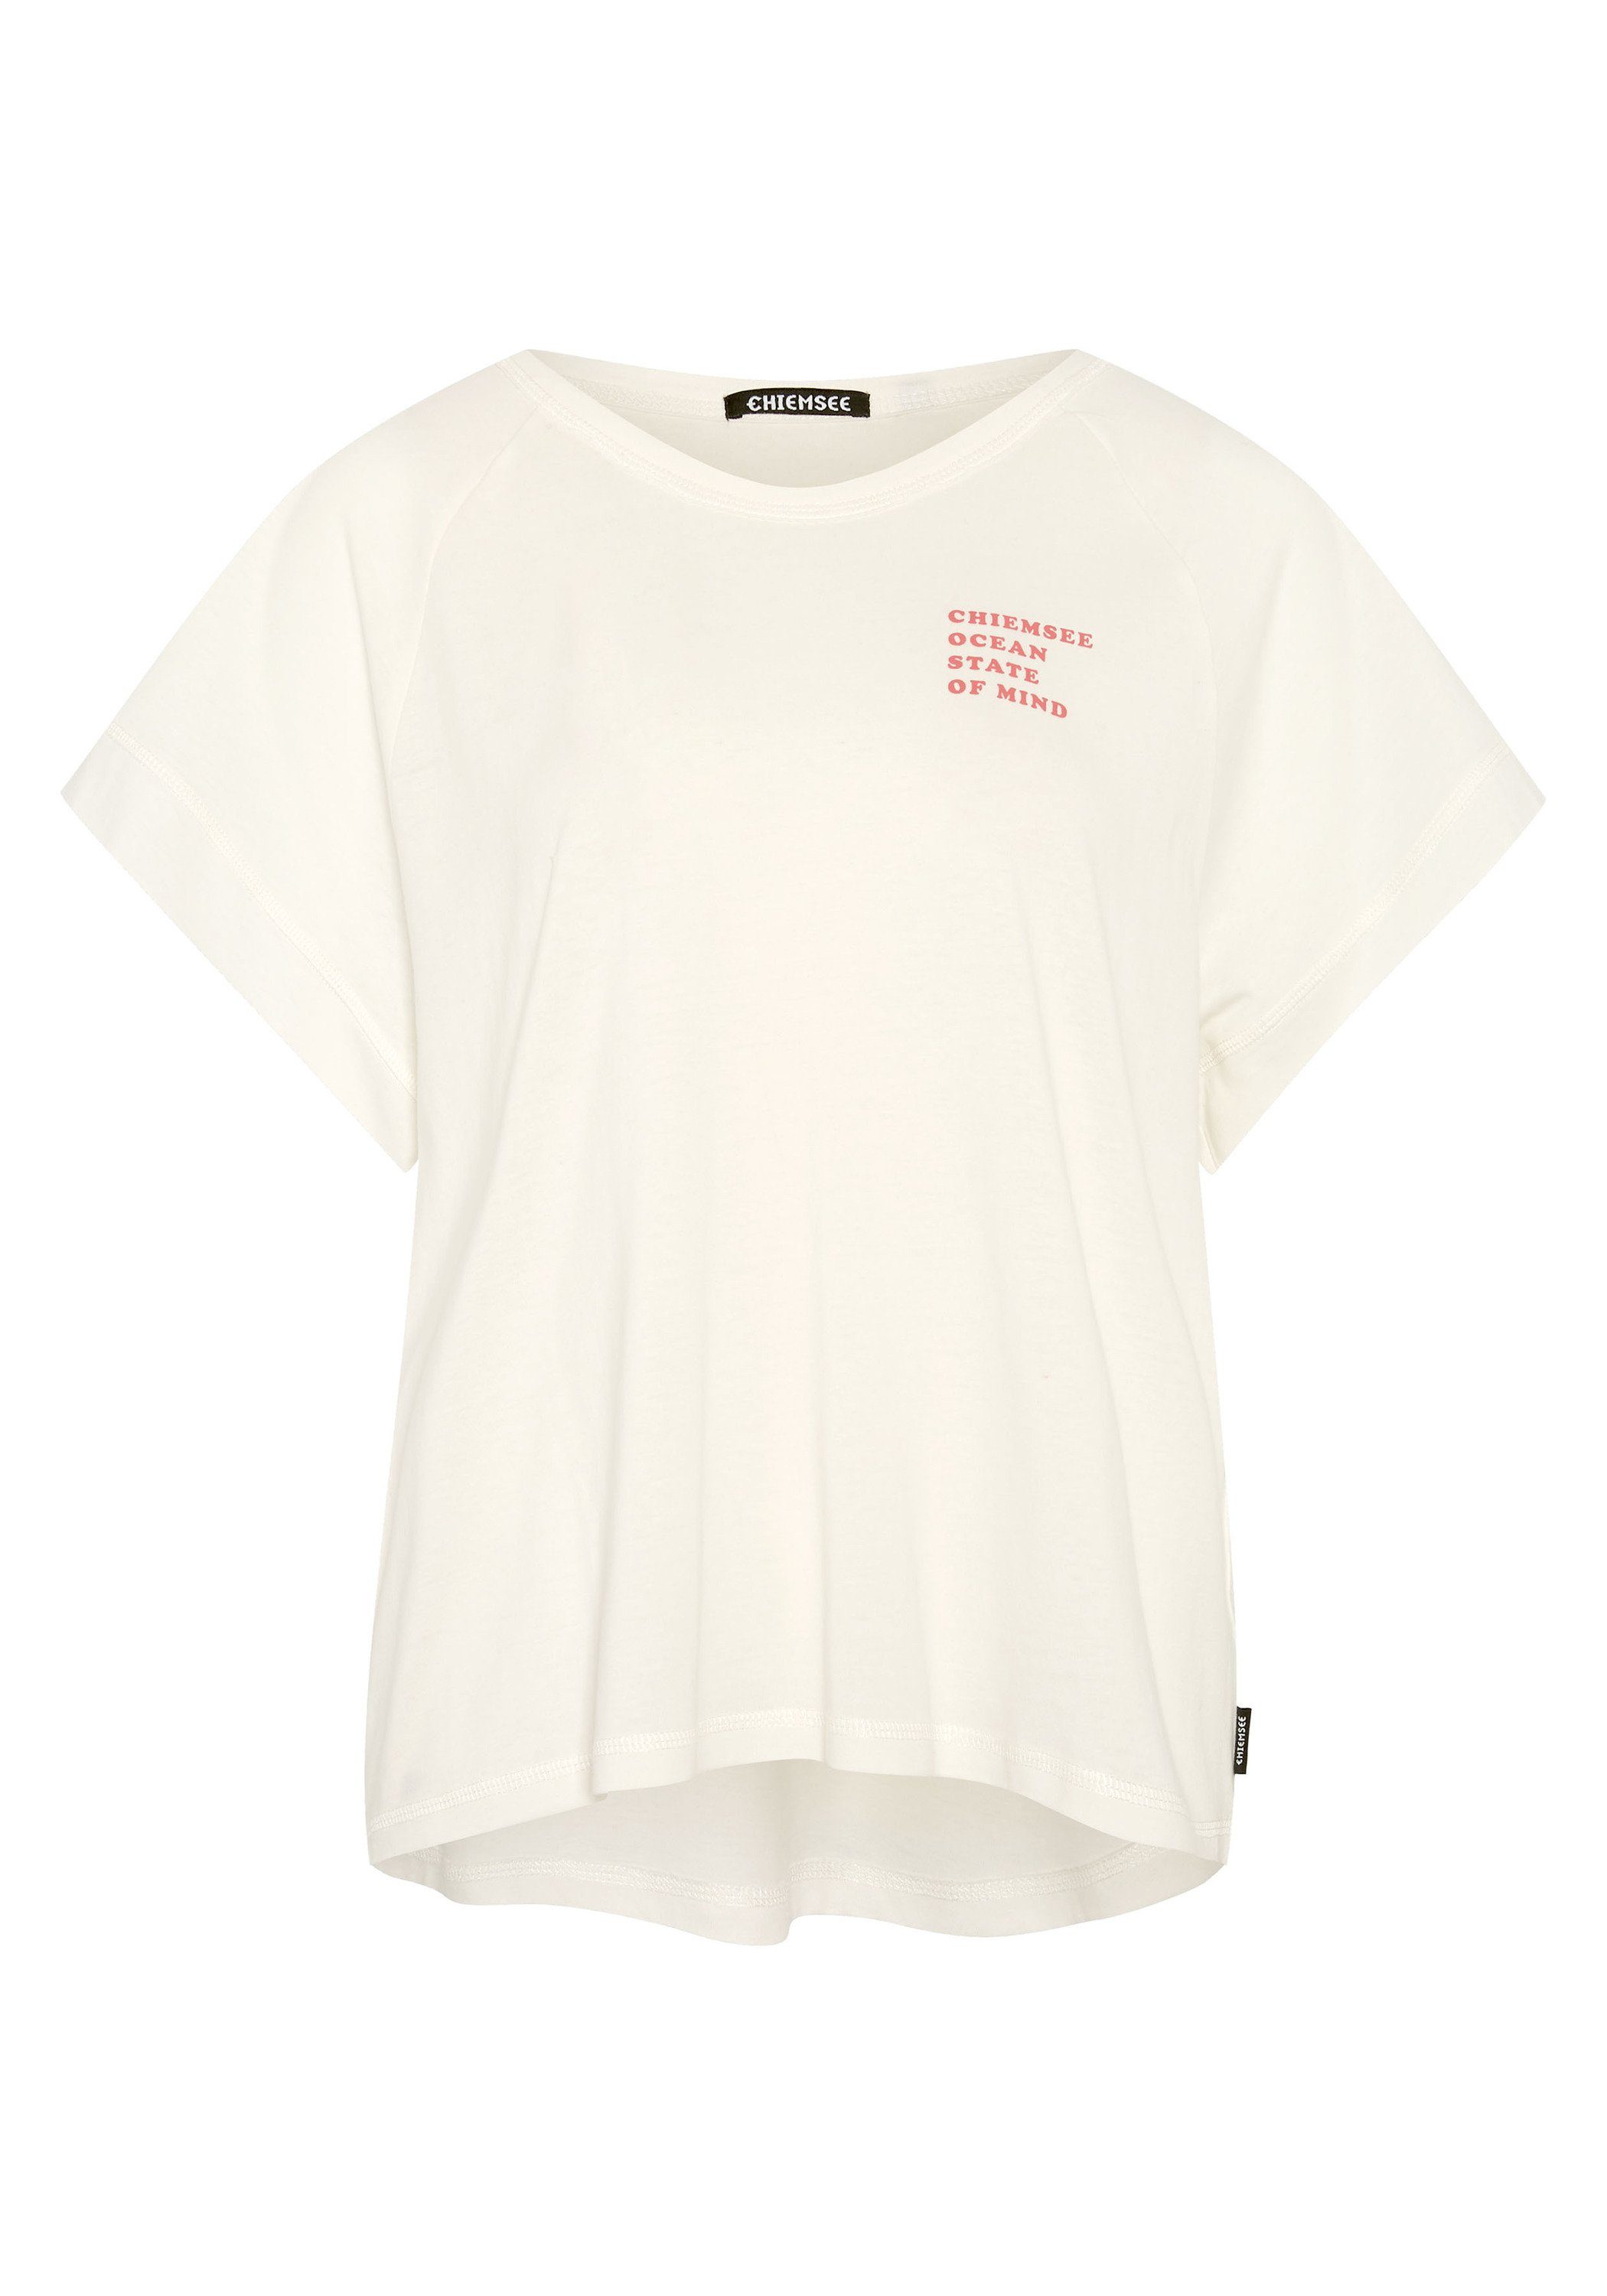 Shirt 1 11-4202 in Vintage-Optik Star Chiemsee White Print-Shirt